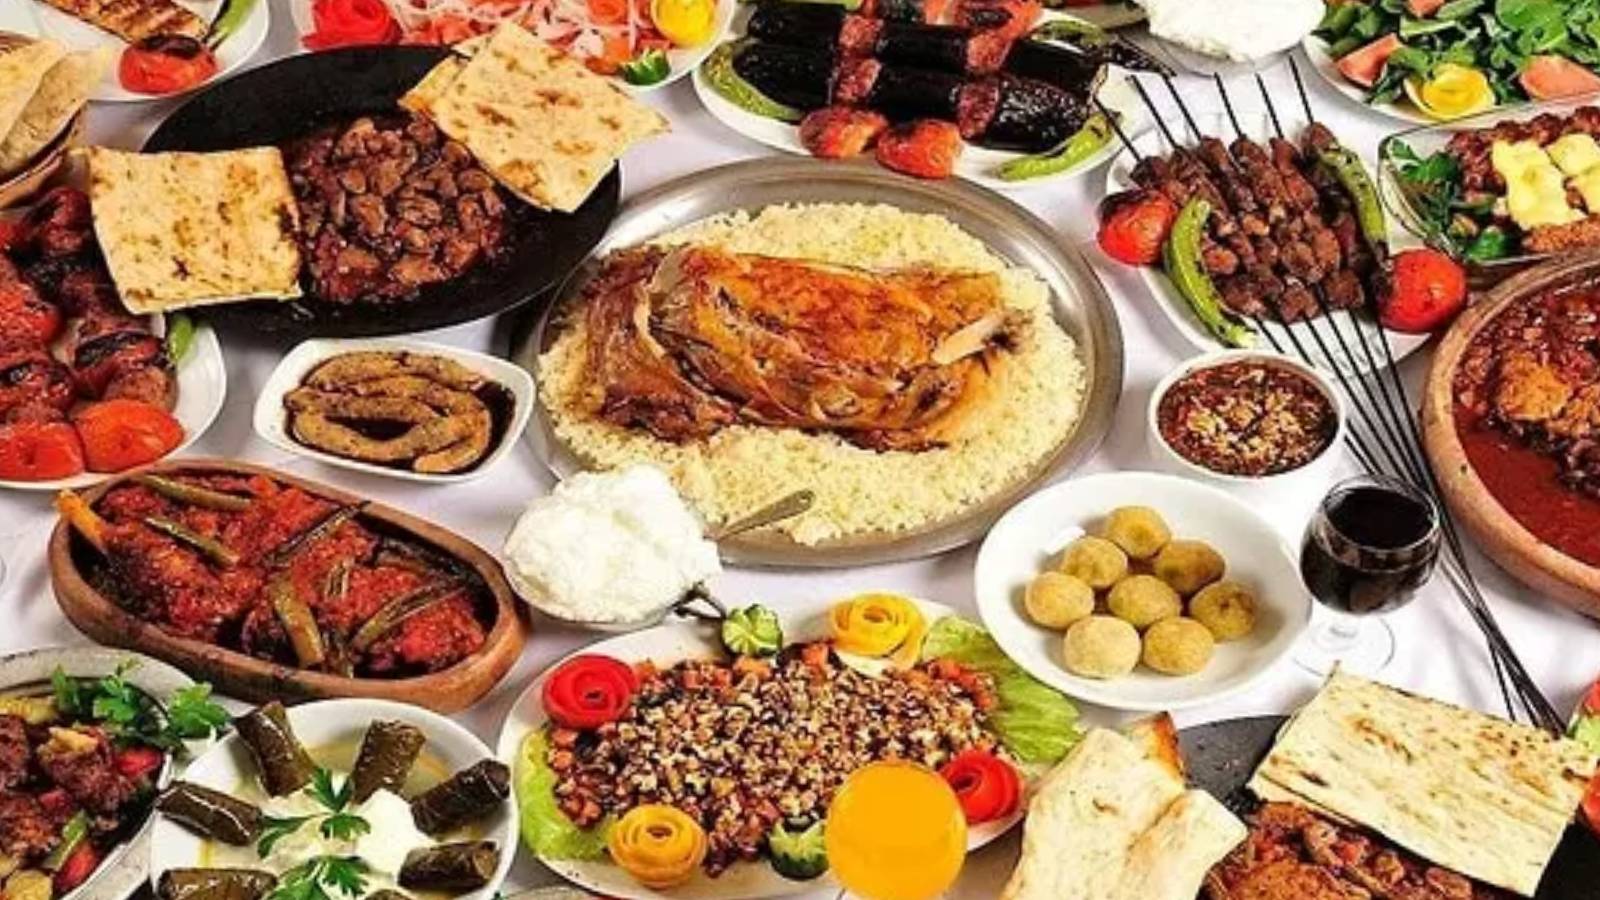 Türkiye'nin en iyi yemekleri belli oldu! Türk mutfağının en sevilen ve leziz yemekleri bu listede